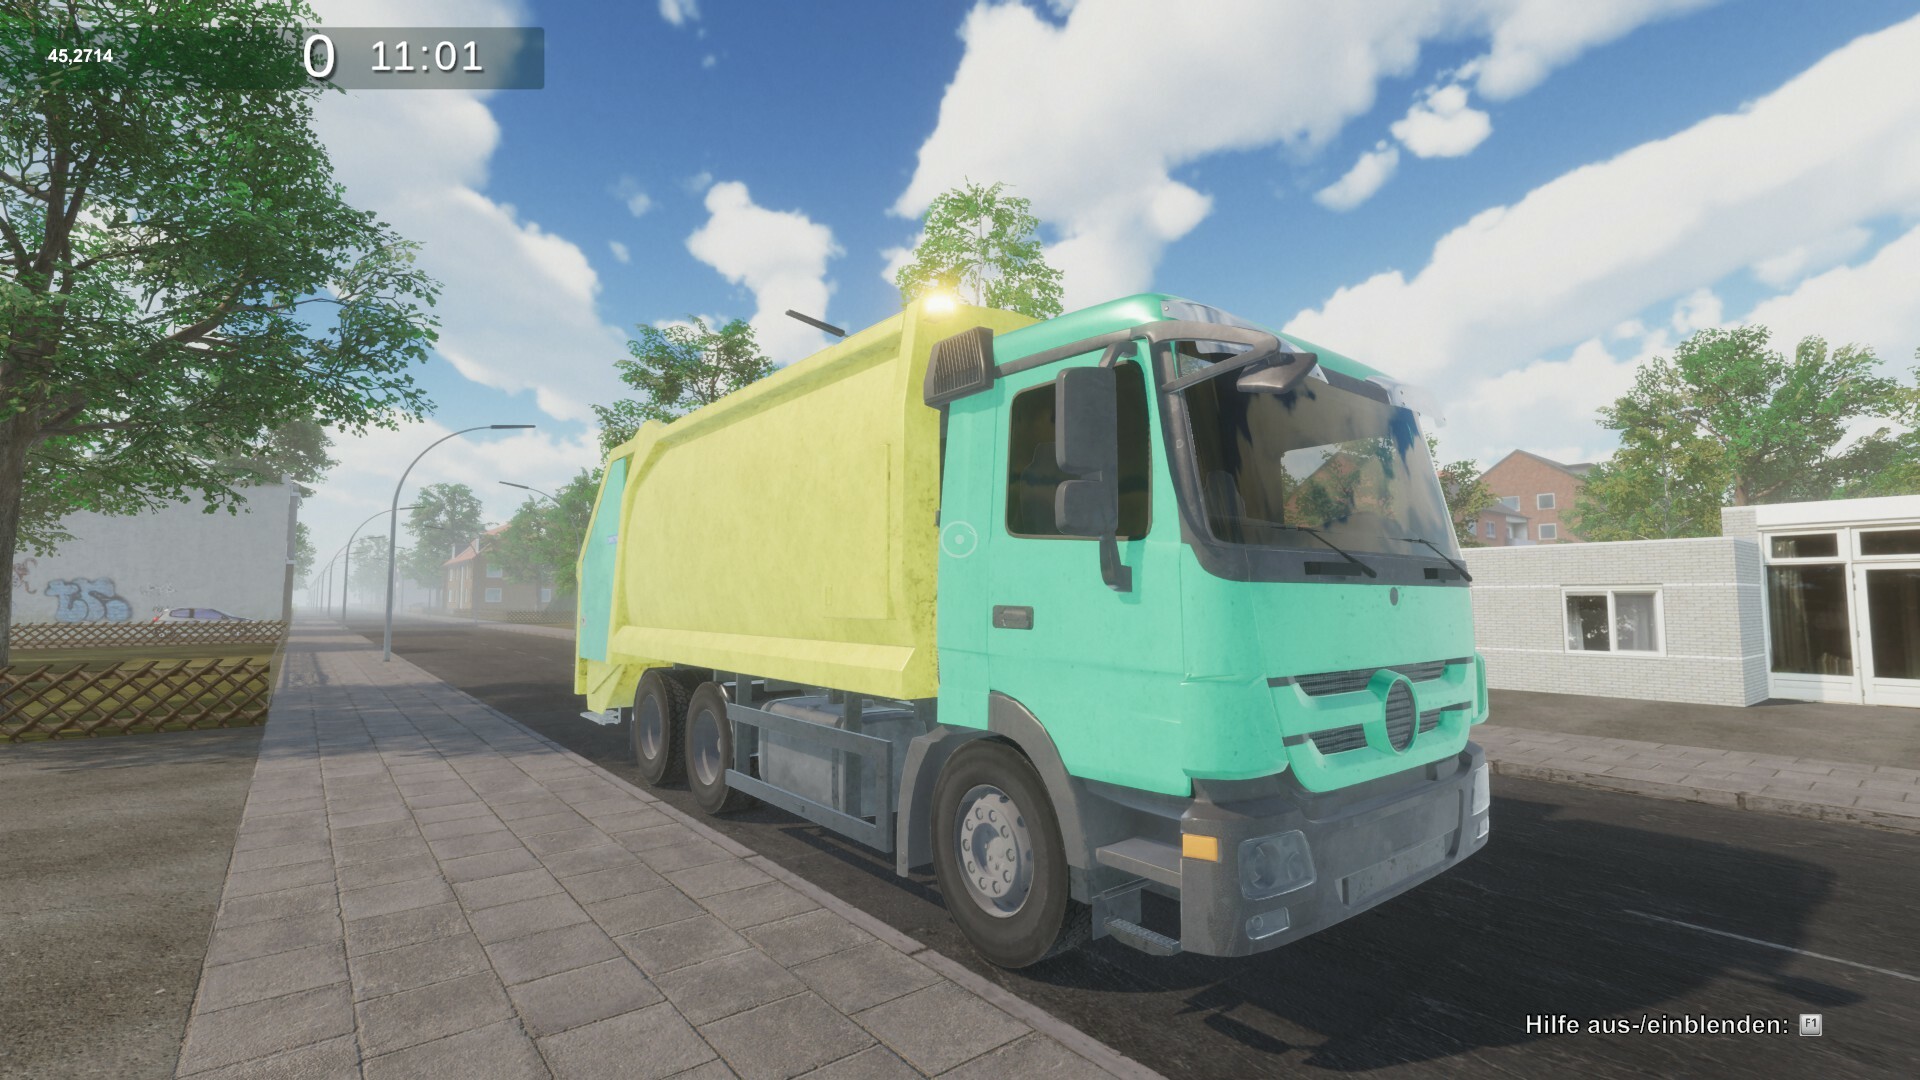 baixar Garbage Truck Simulator via torrent